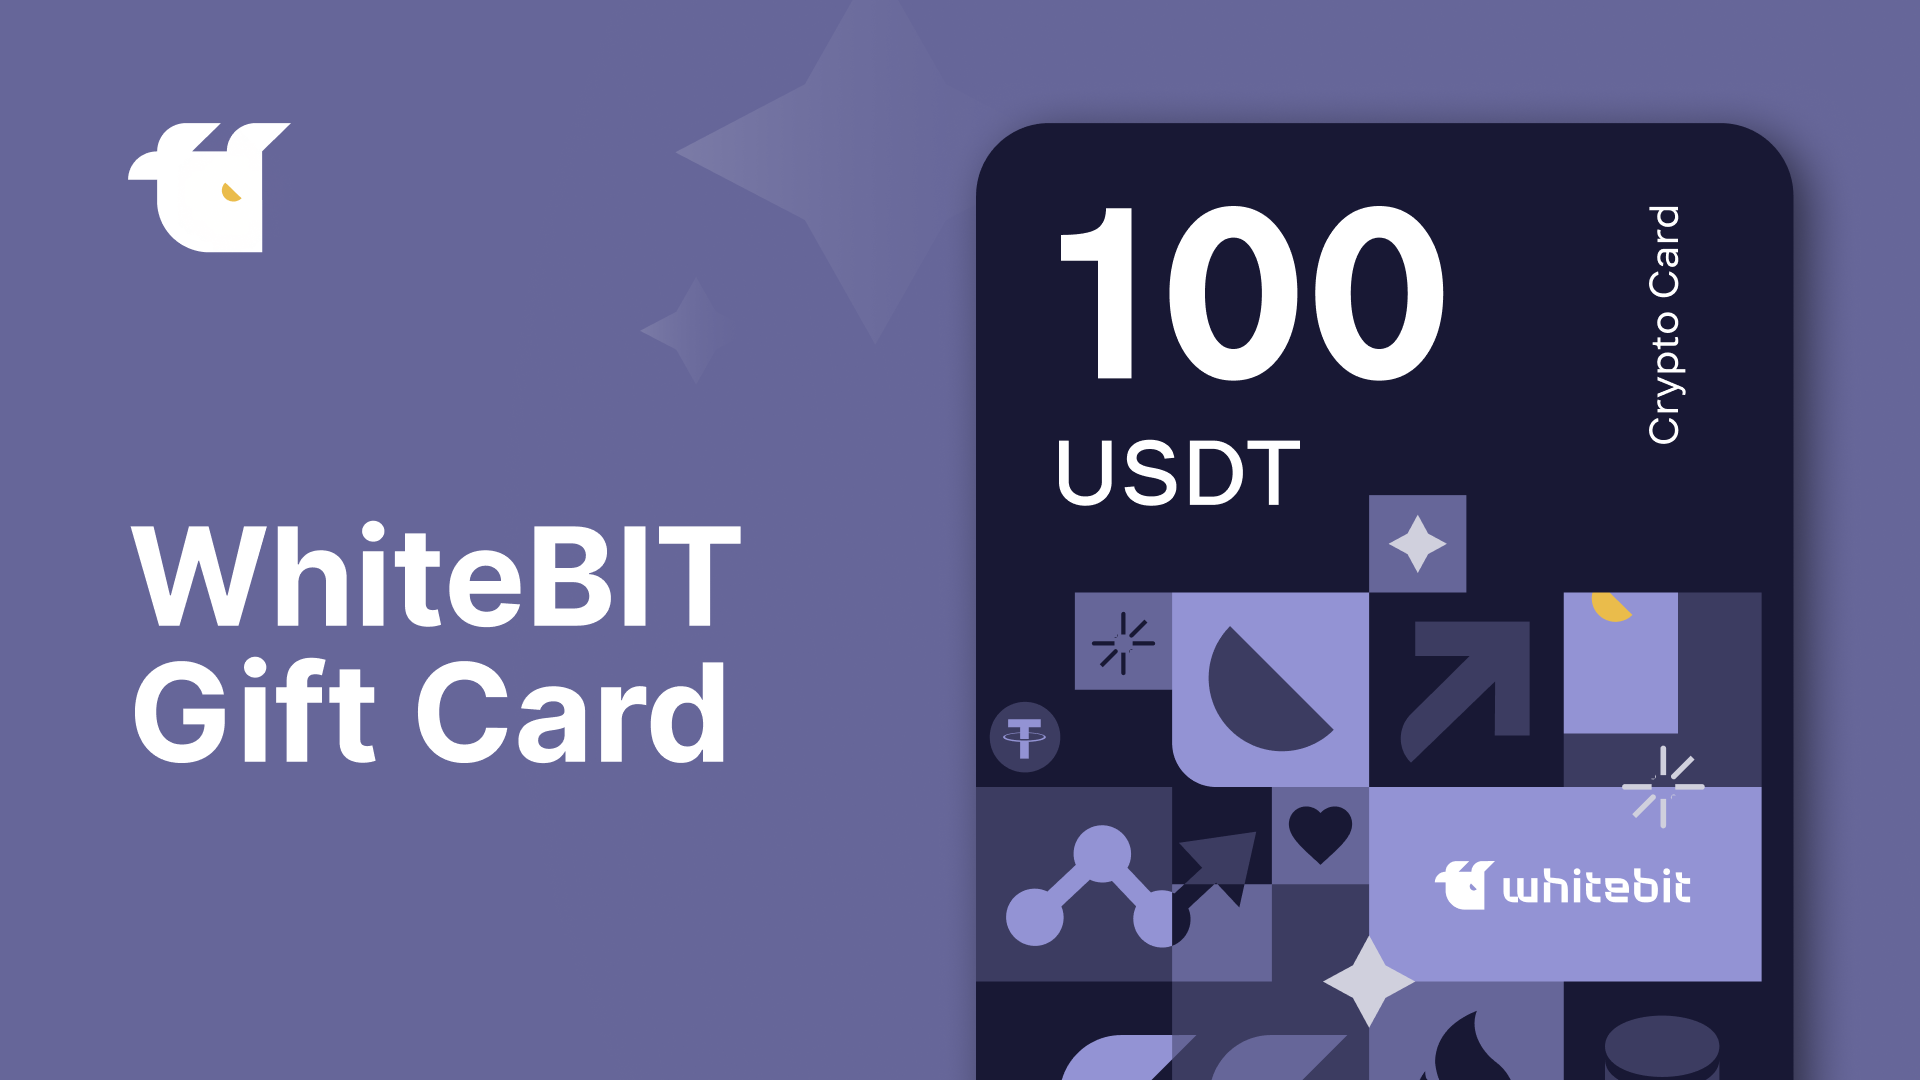 WhiteBIT 100 USDT Gift Card